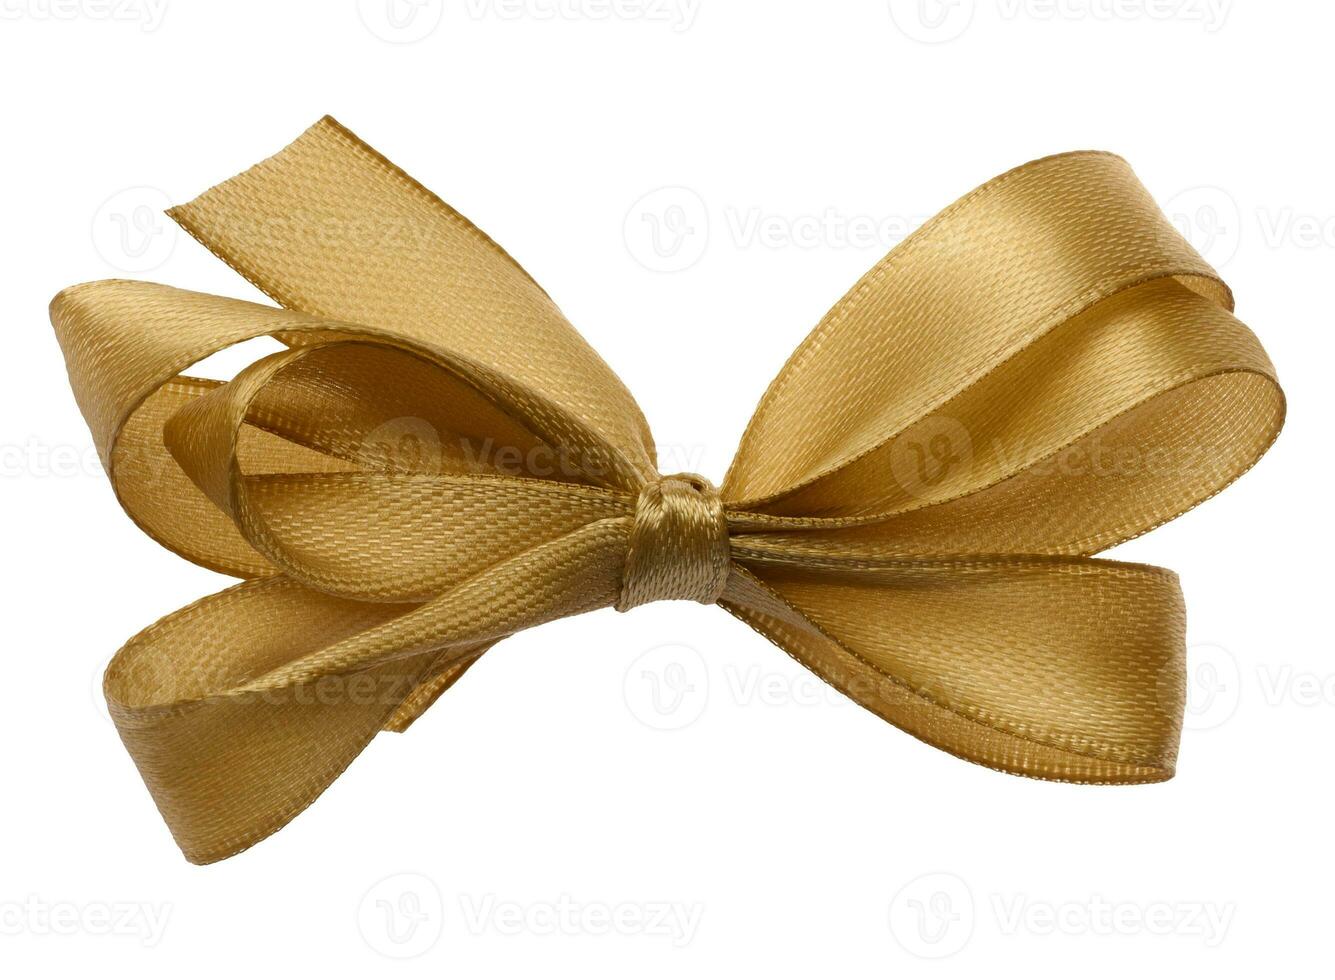 lié arc fabriqué de d'or soie ruban sur un isolé arrière-plan, décor pour une cadeau photo